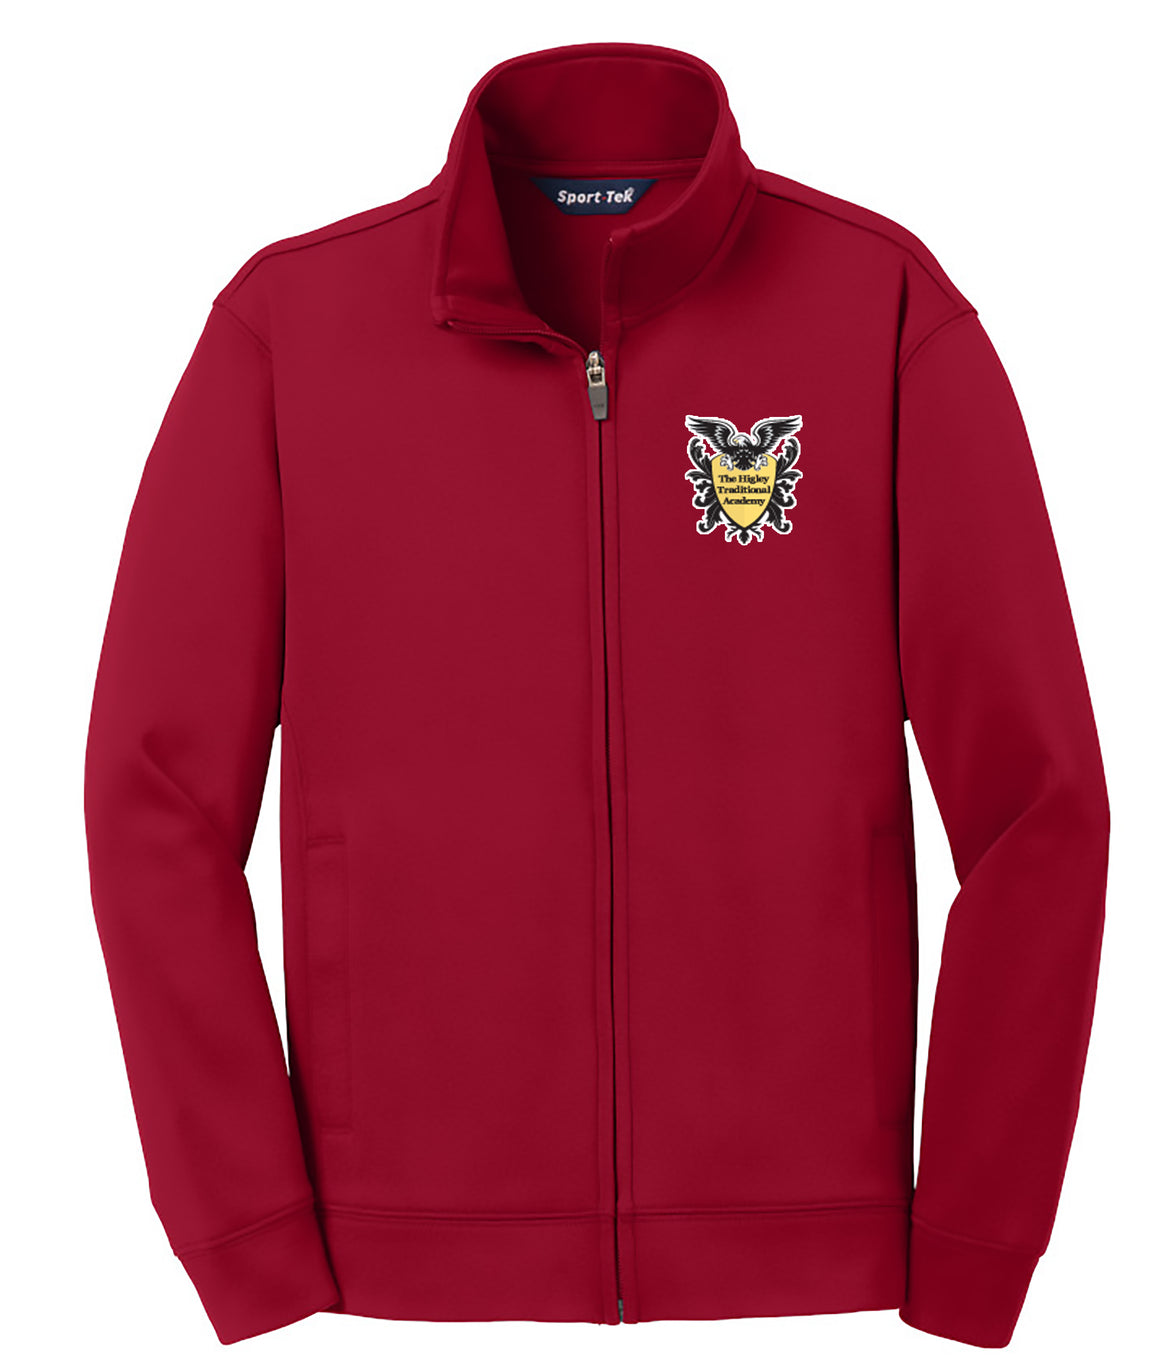 Higley Traditional School - Red Fleece Zip Up